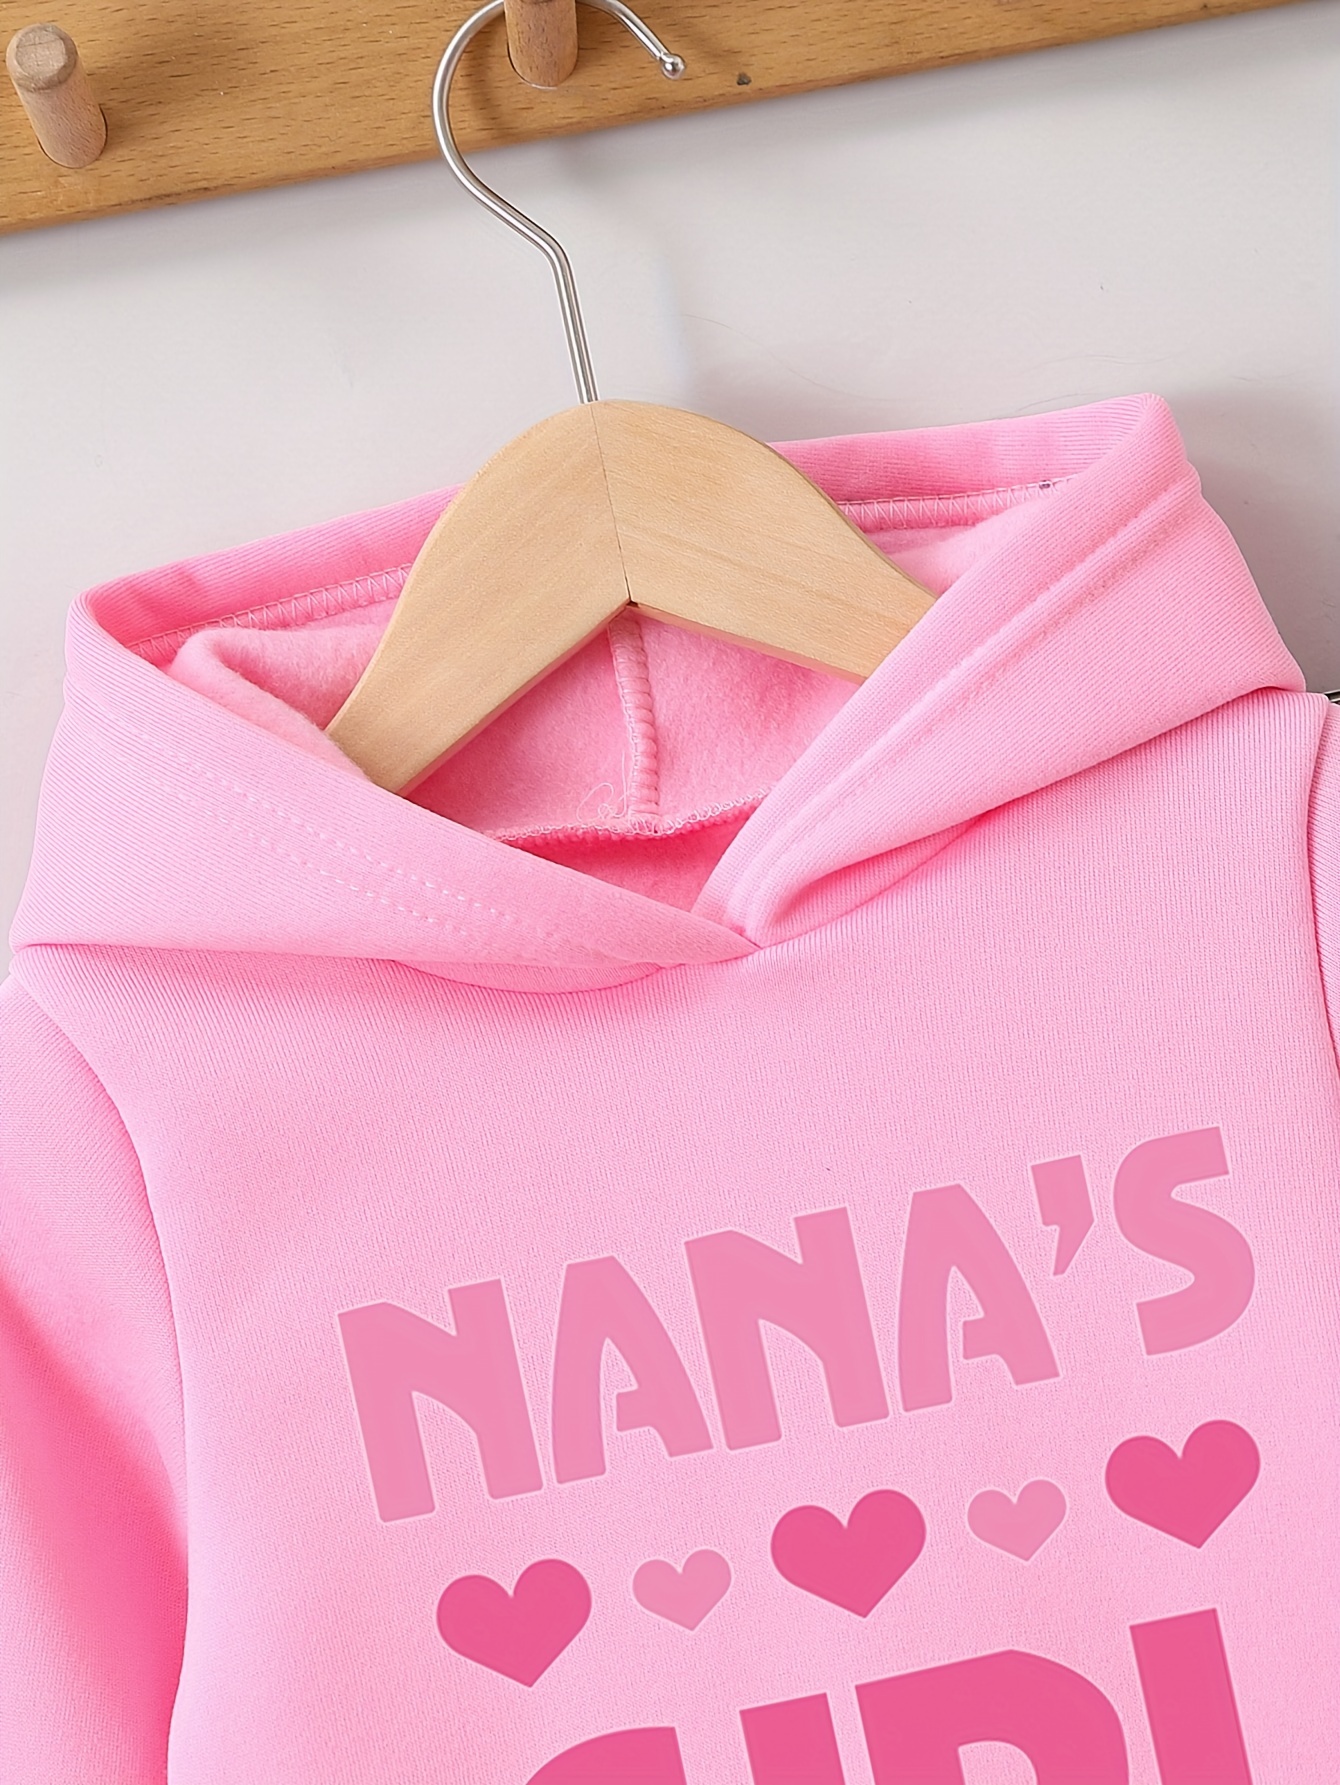 Nana's Sweatpants Pink by NANA'S